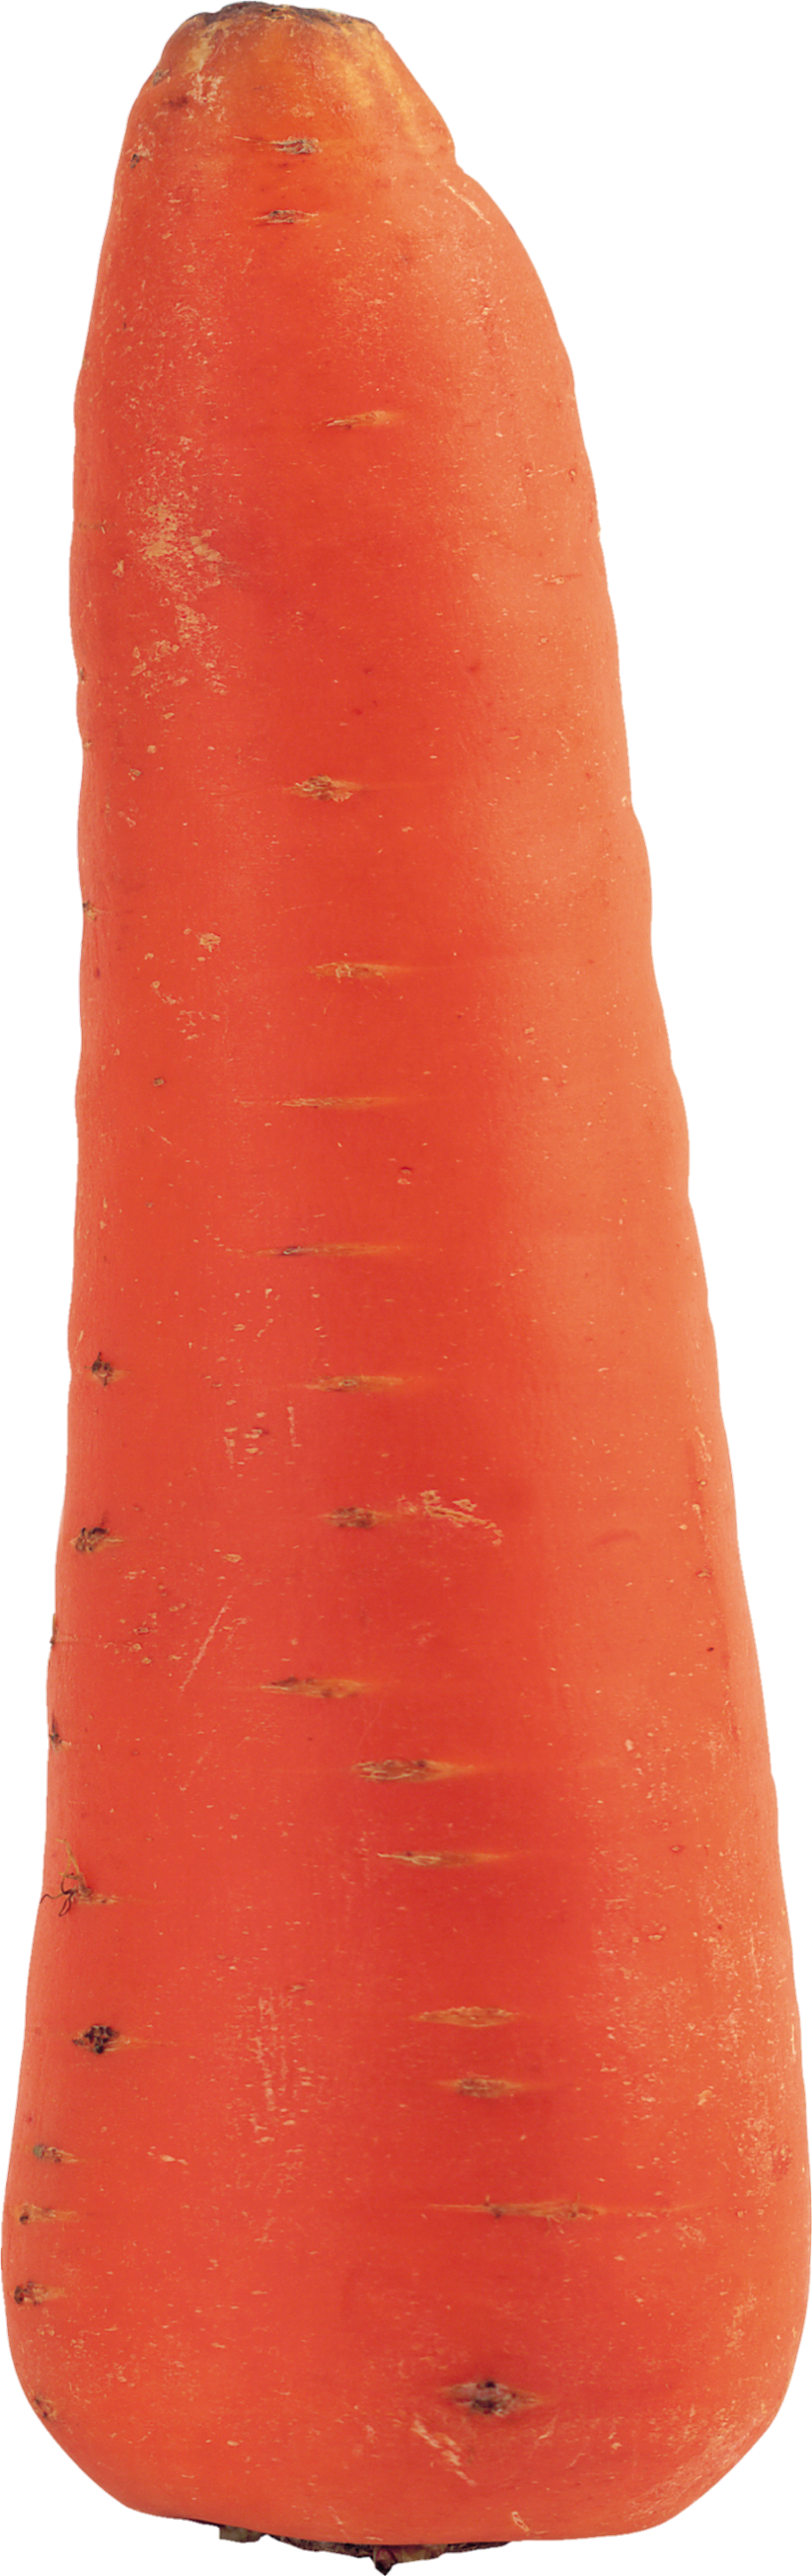 Carrot-6